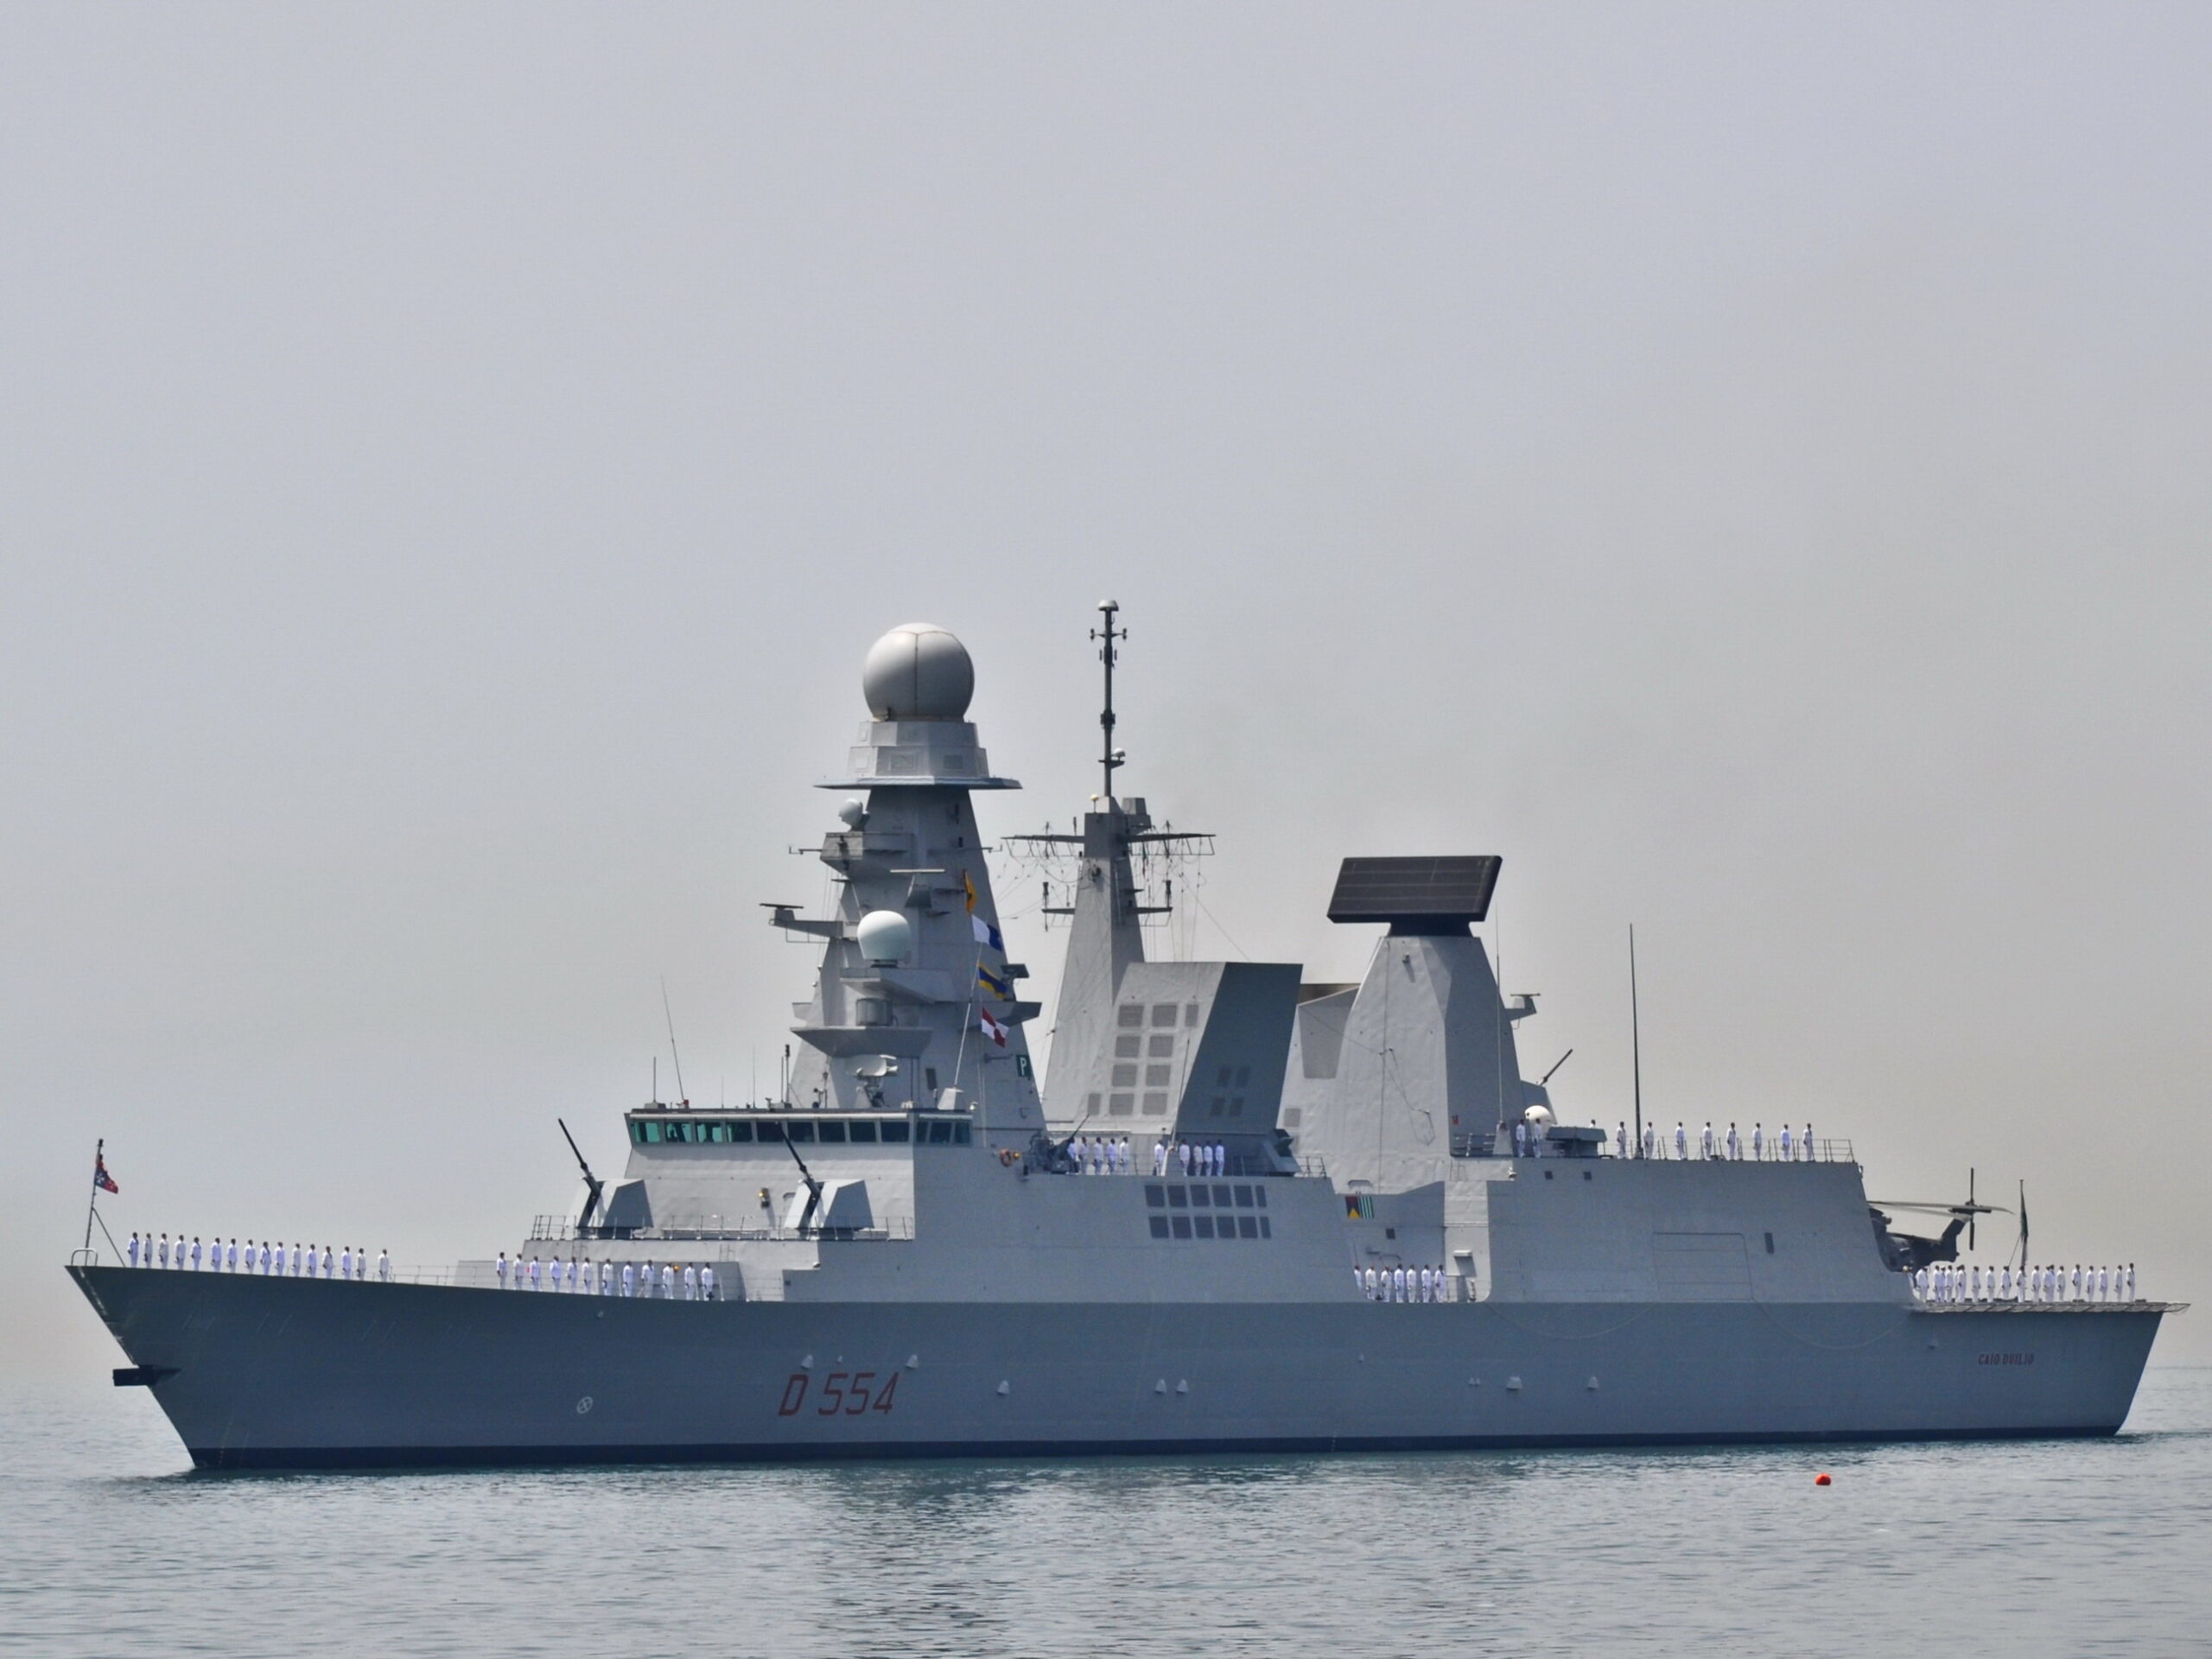 Σενάρια σύγκρουσης υψηλής έντασης από το γαλλικό Ναυτικό στη Μεσόγειο στην άσκηση EXOCET